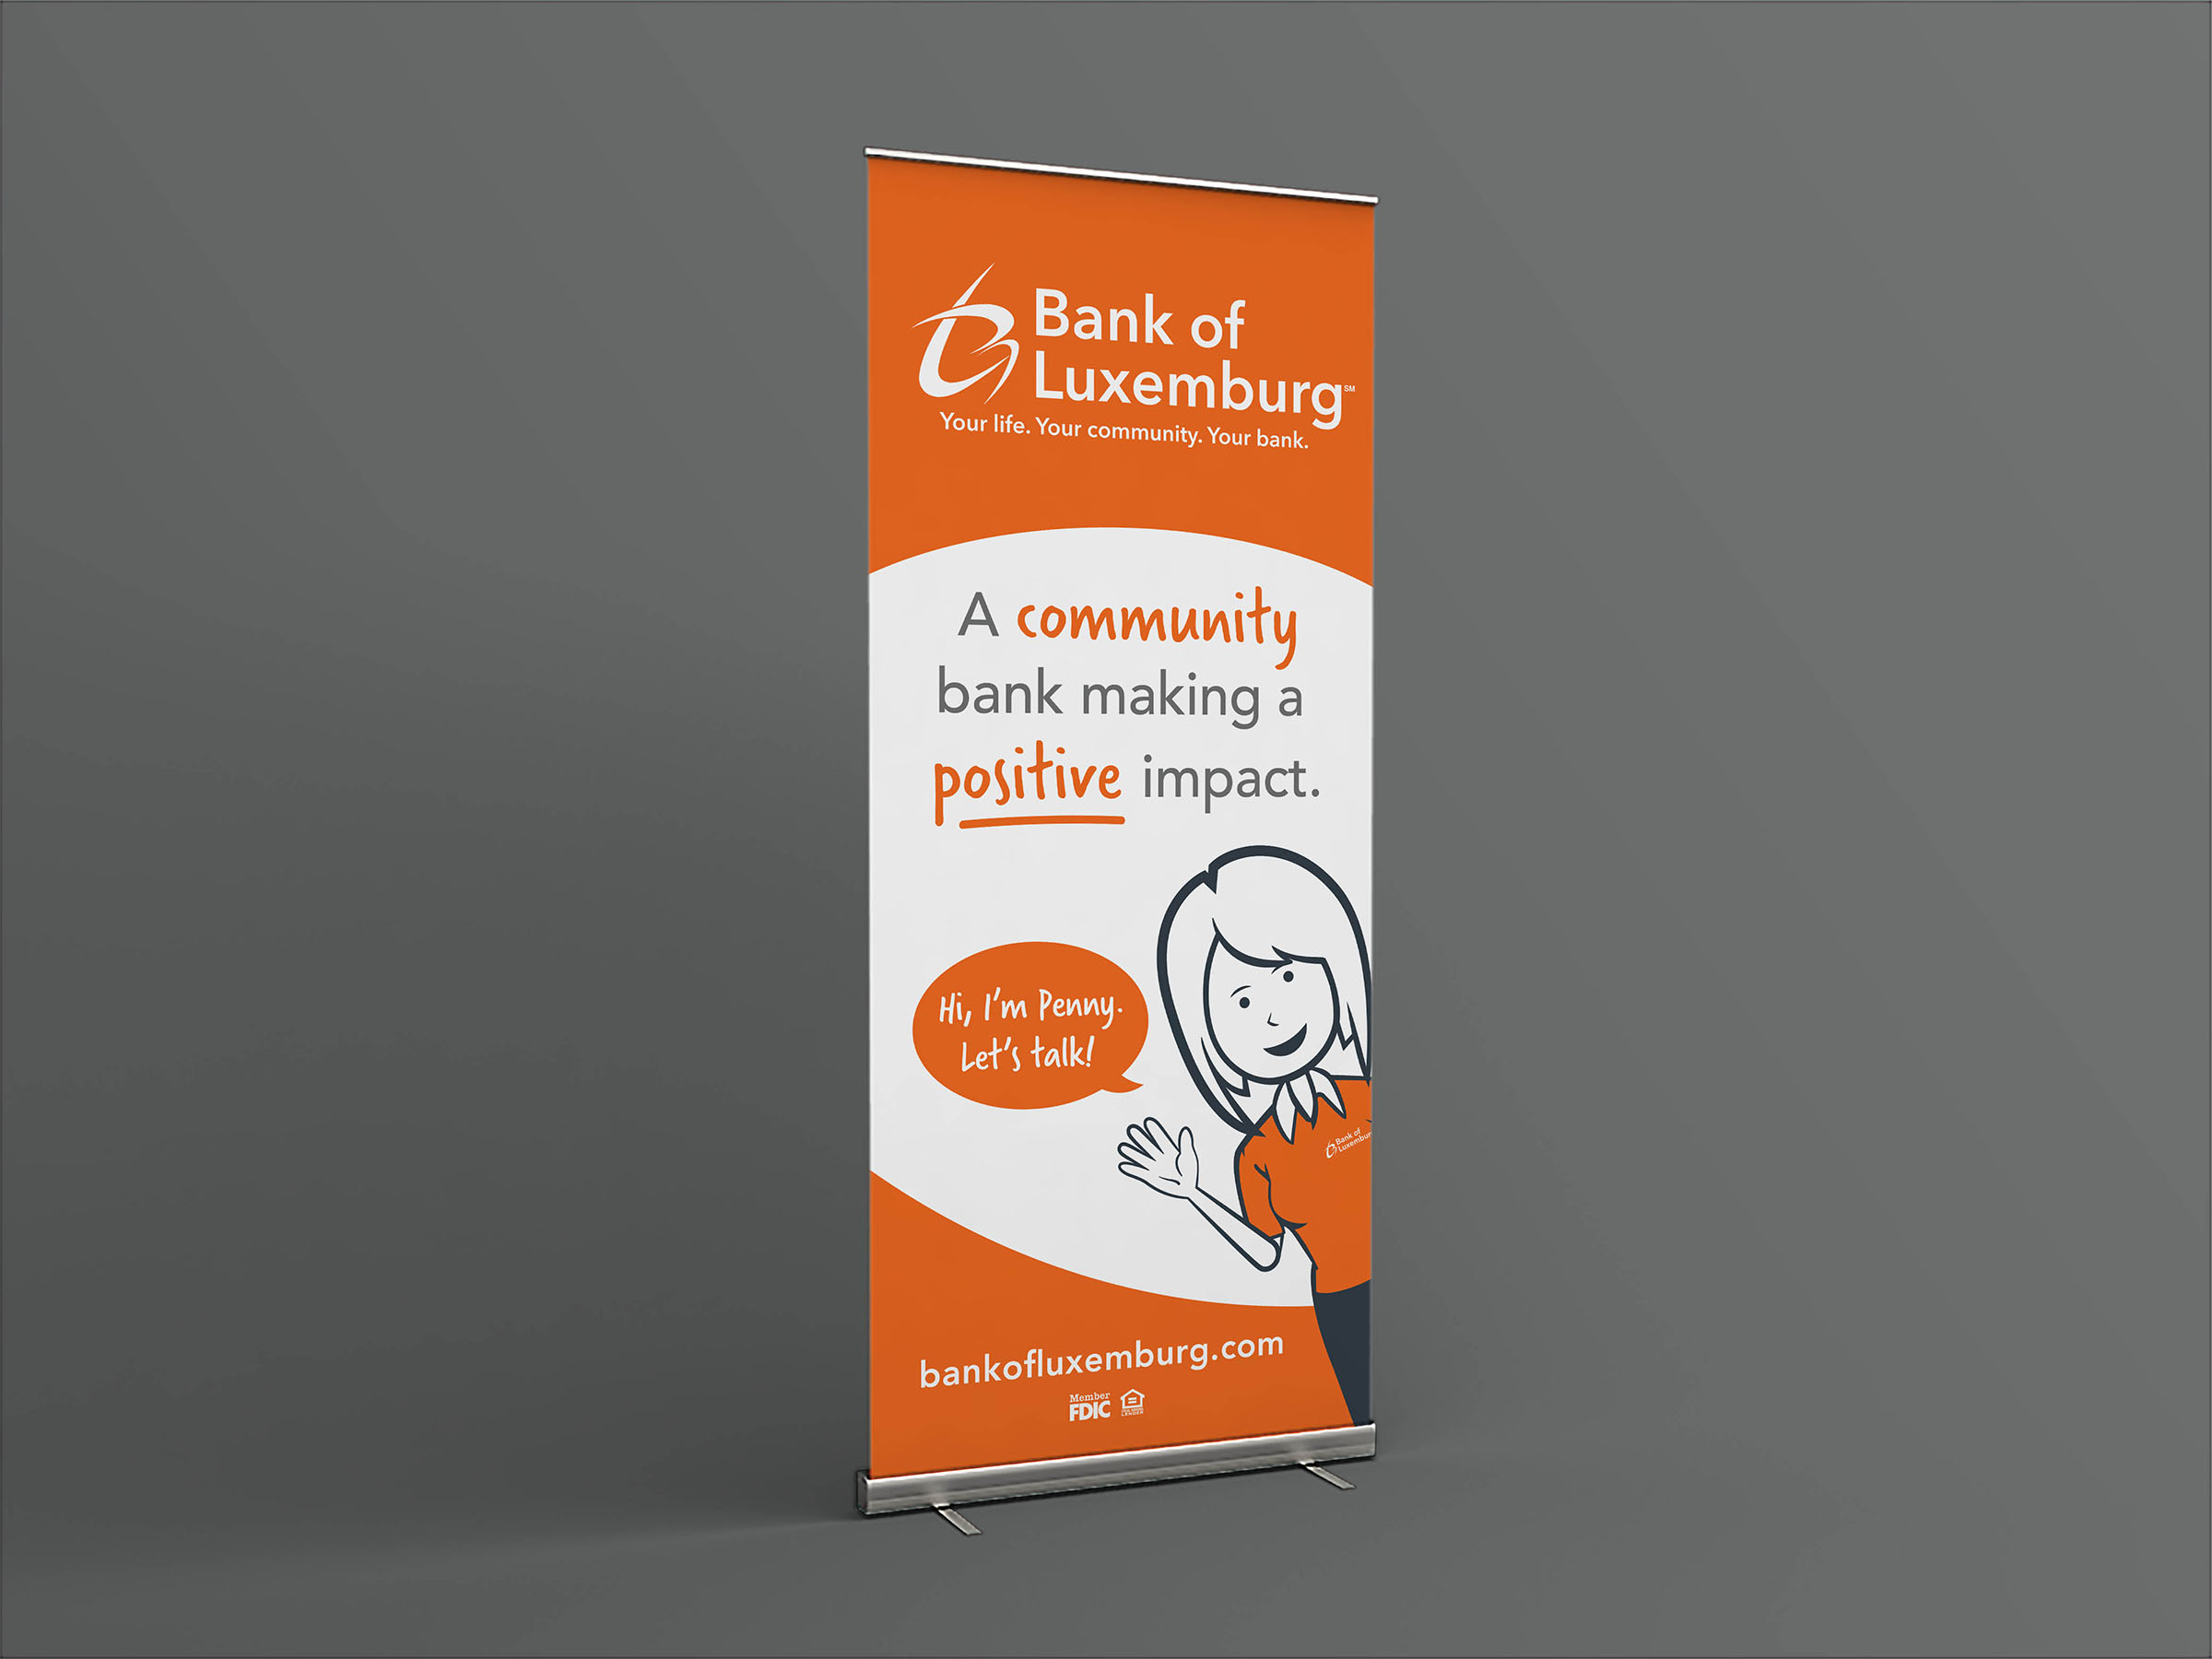 Custom pull-up banner design for Bank of Luxemburg